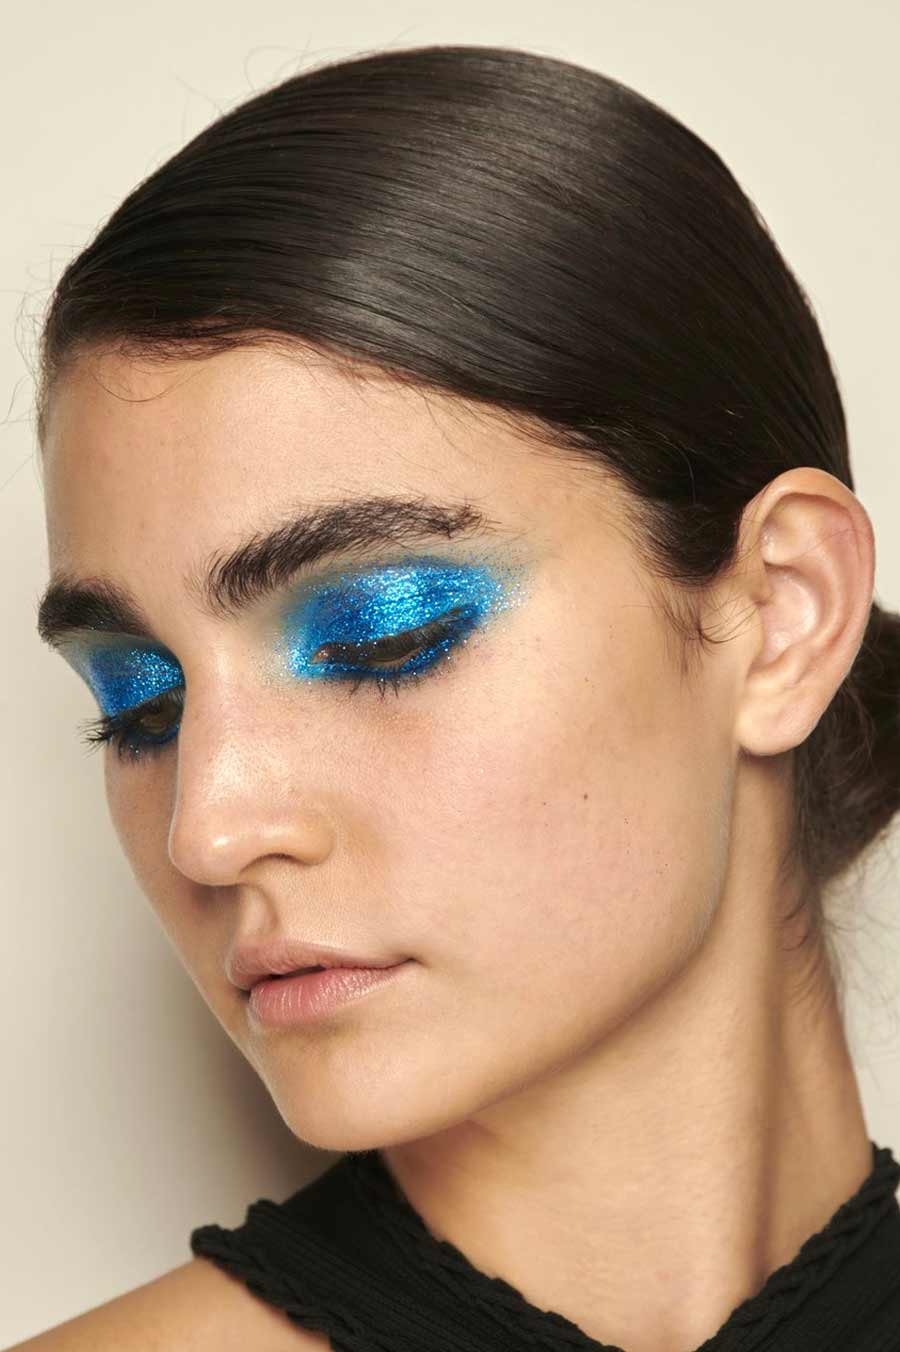 maquiagem com glitter azul nos olhos